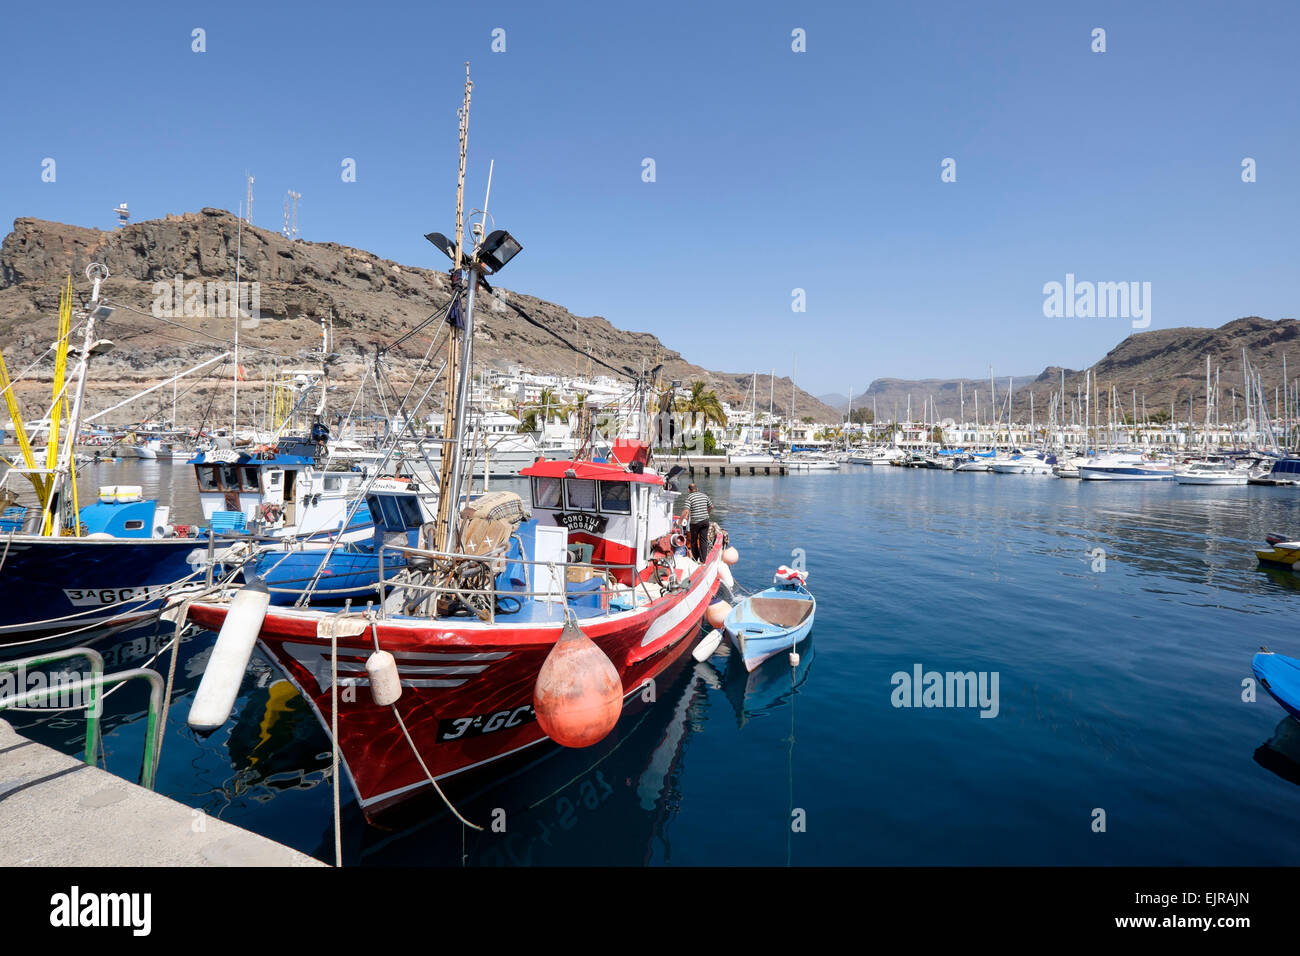 Les bateaux de pêche amarrés dans le port de Puerto de Mogan, Grande Canarie, Espagne Banque D'Images